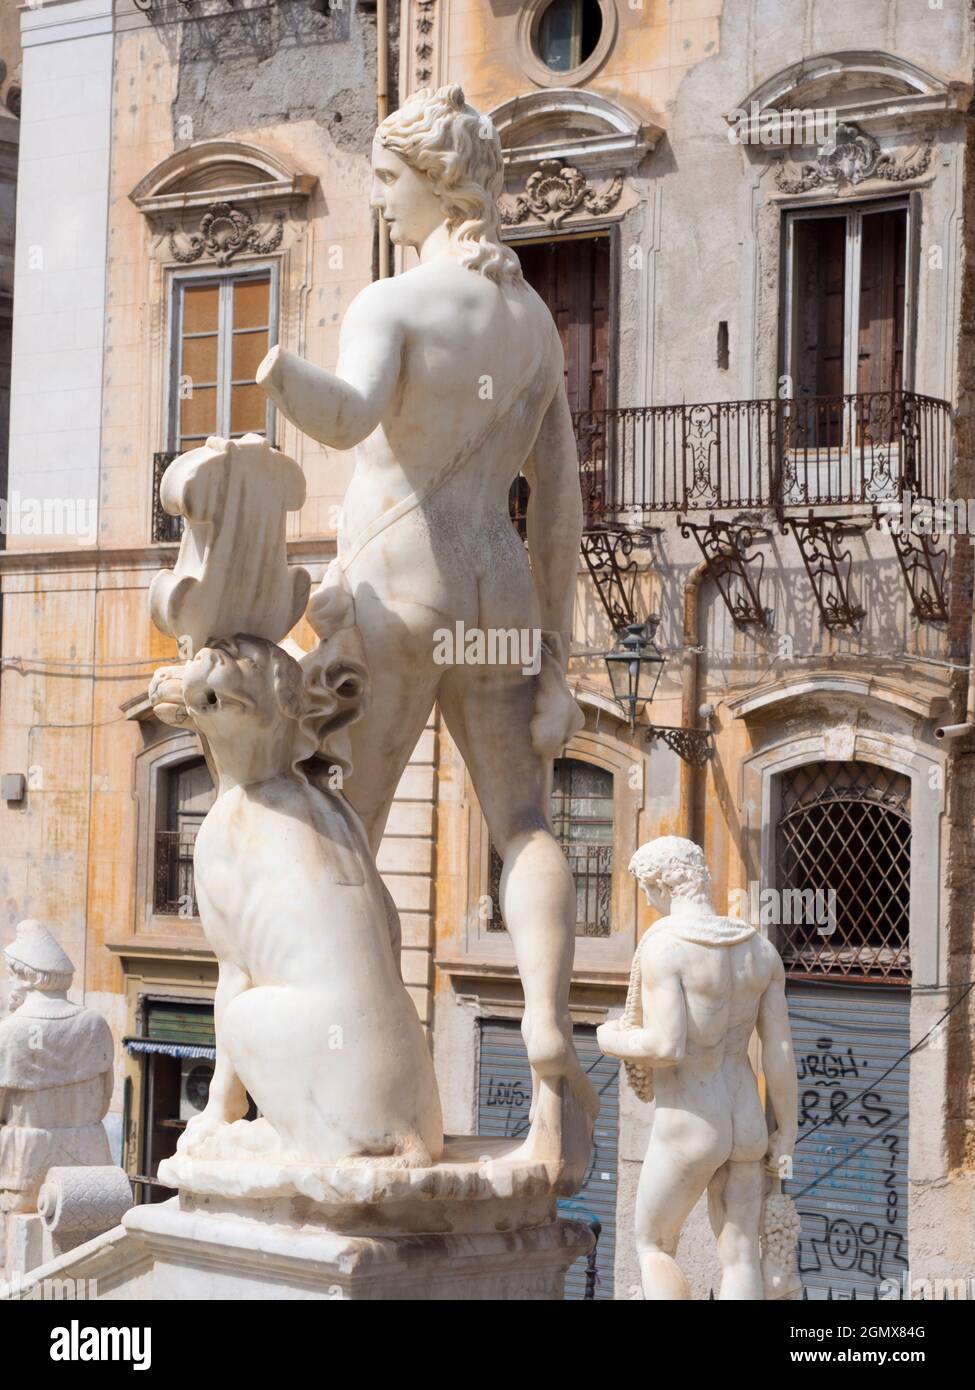 Palermo, Sizilien, Italien - 23. September 2019 Fontana Pretoria - der Praetorianische Brunnen ist ein einst beeindruckender Renaissance-Brunnen im Herzen von Stockfoto